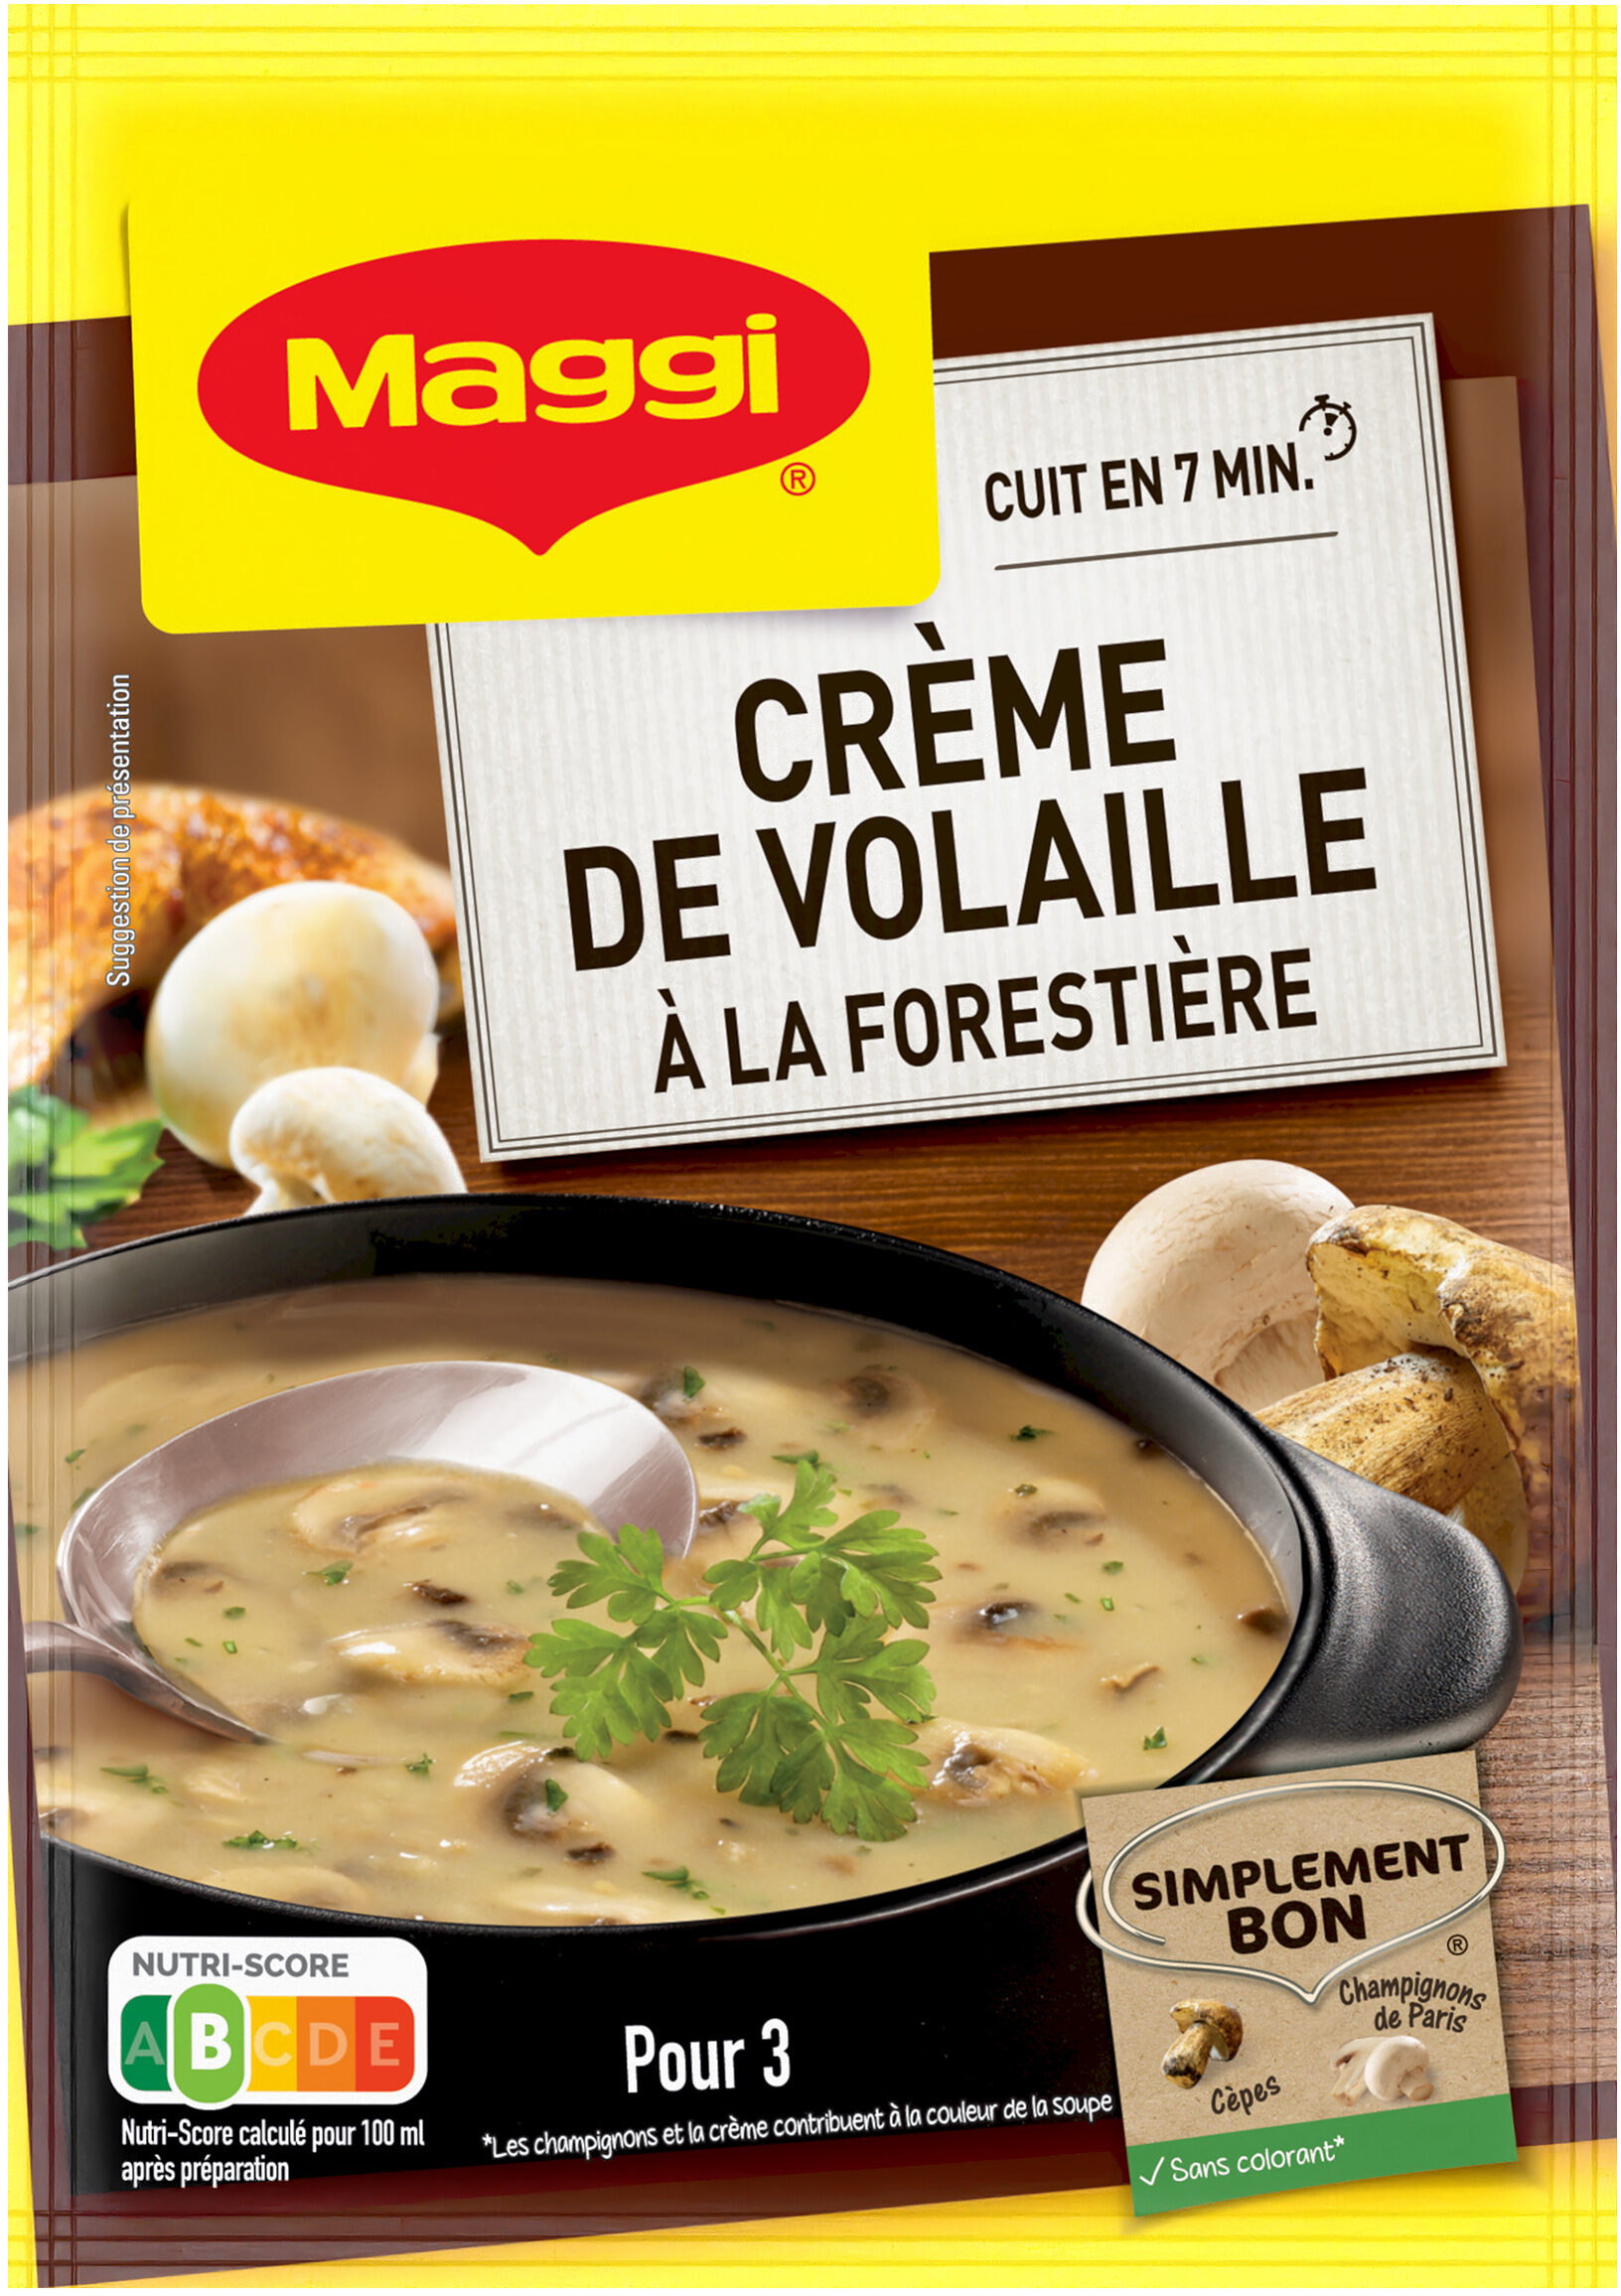 MAGGI Saveur à l'Ancienne Soupe Crème de Volaille à la Forestière 64g - Product - fr